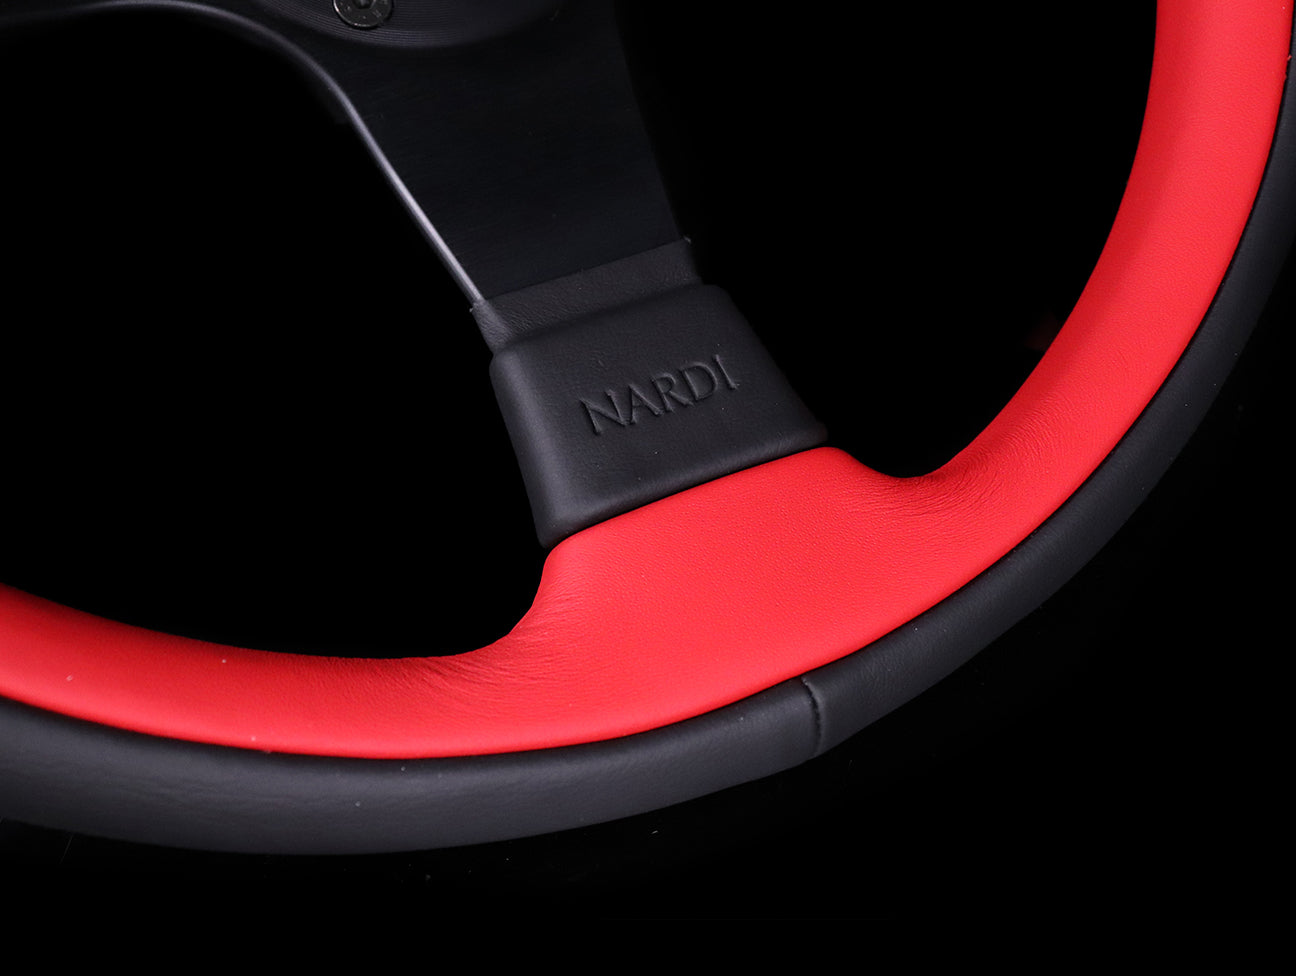 Nardi Leader 350mm Steering Wheel - Black & Red Leather